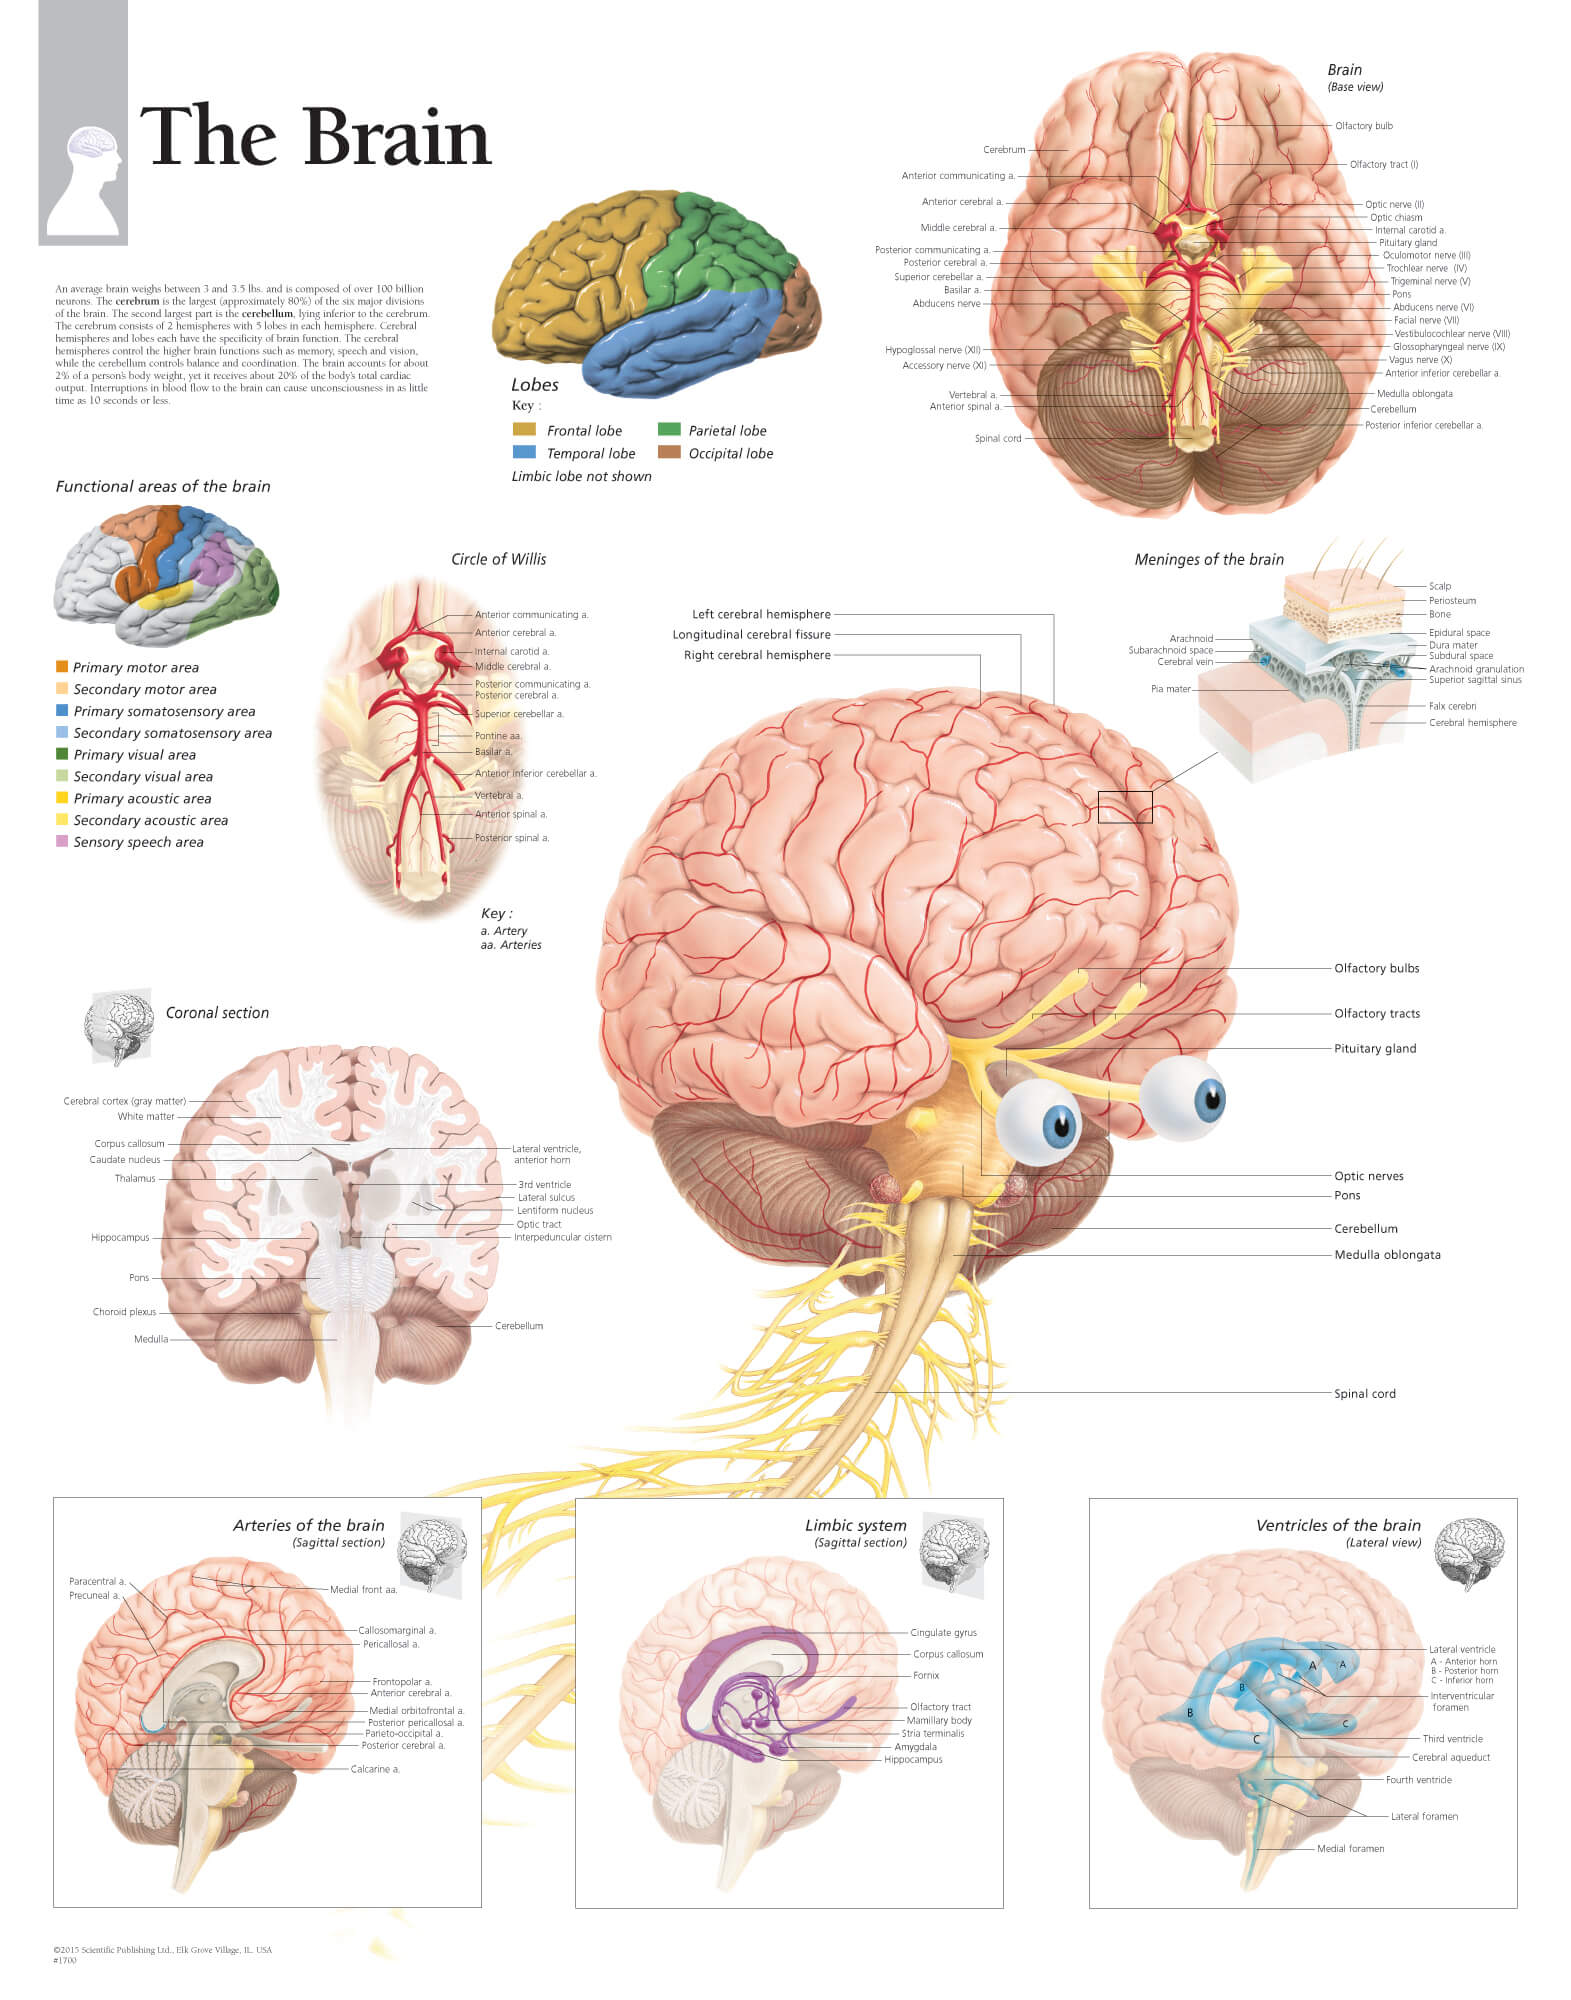 Netter Brain Anatomy